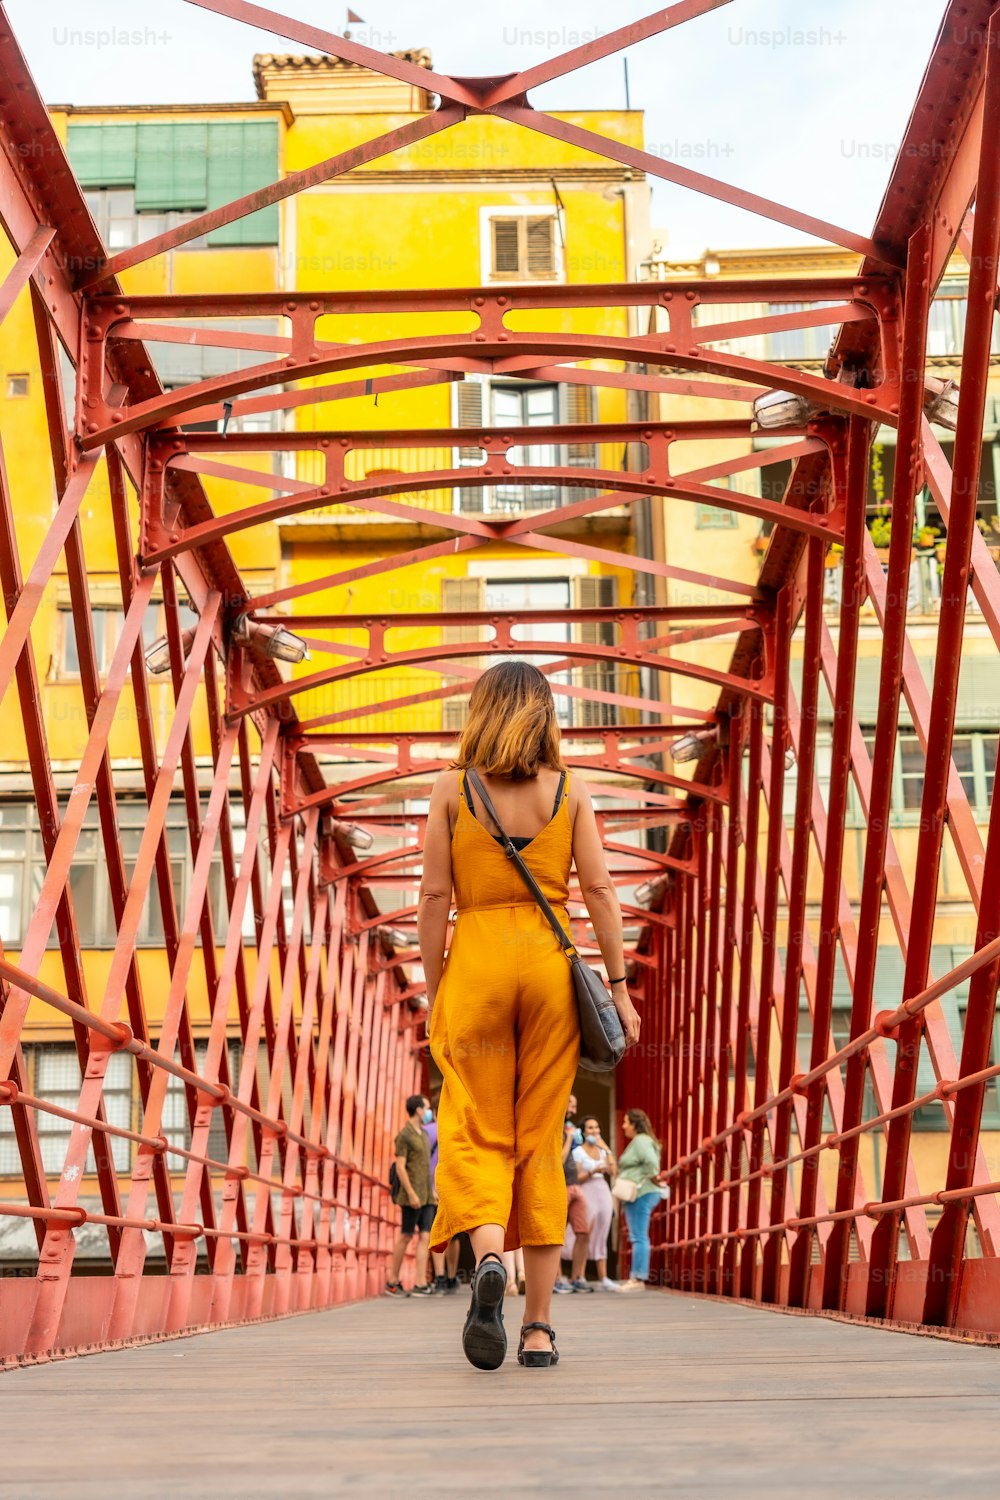 Ville médiévale de Gérone, un jeune touriste orange sur le célèbre pont rouge Pont de les Peixateries Velles, Costa Brava de Catalogne